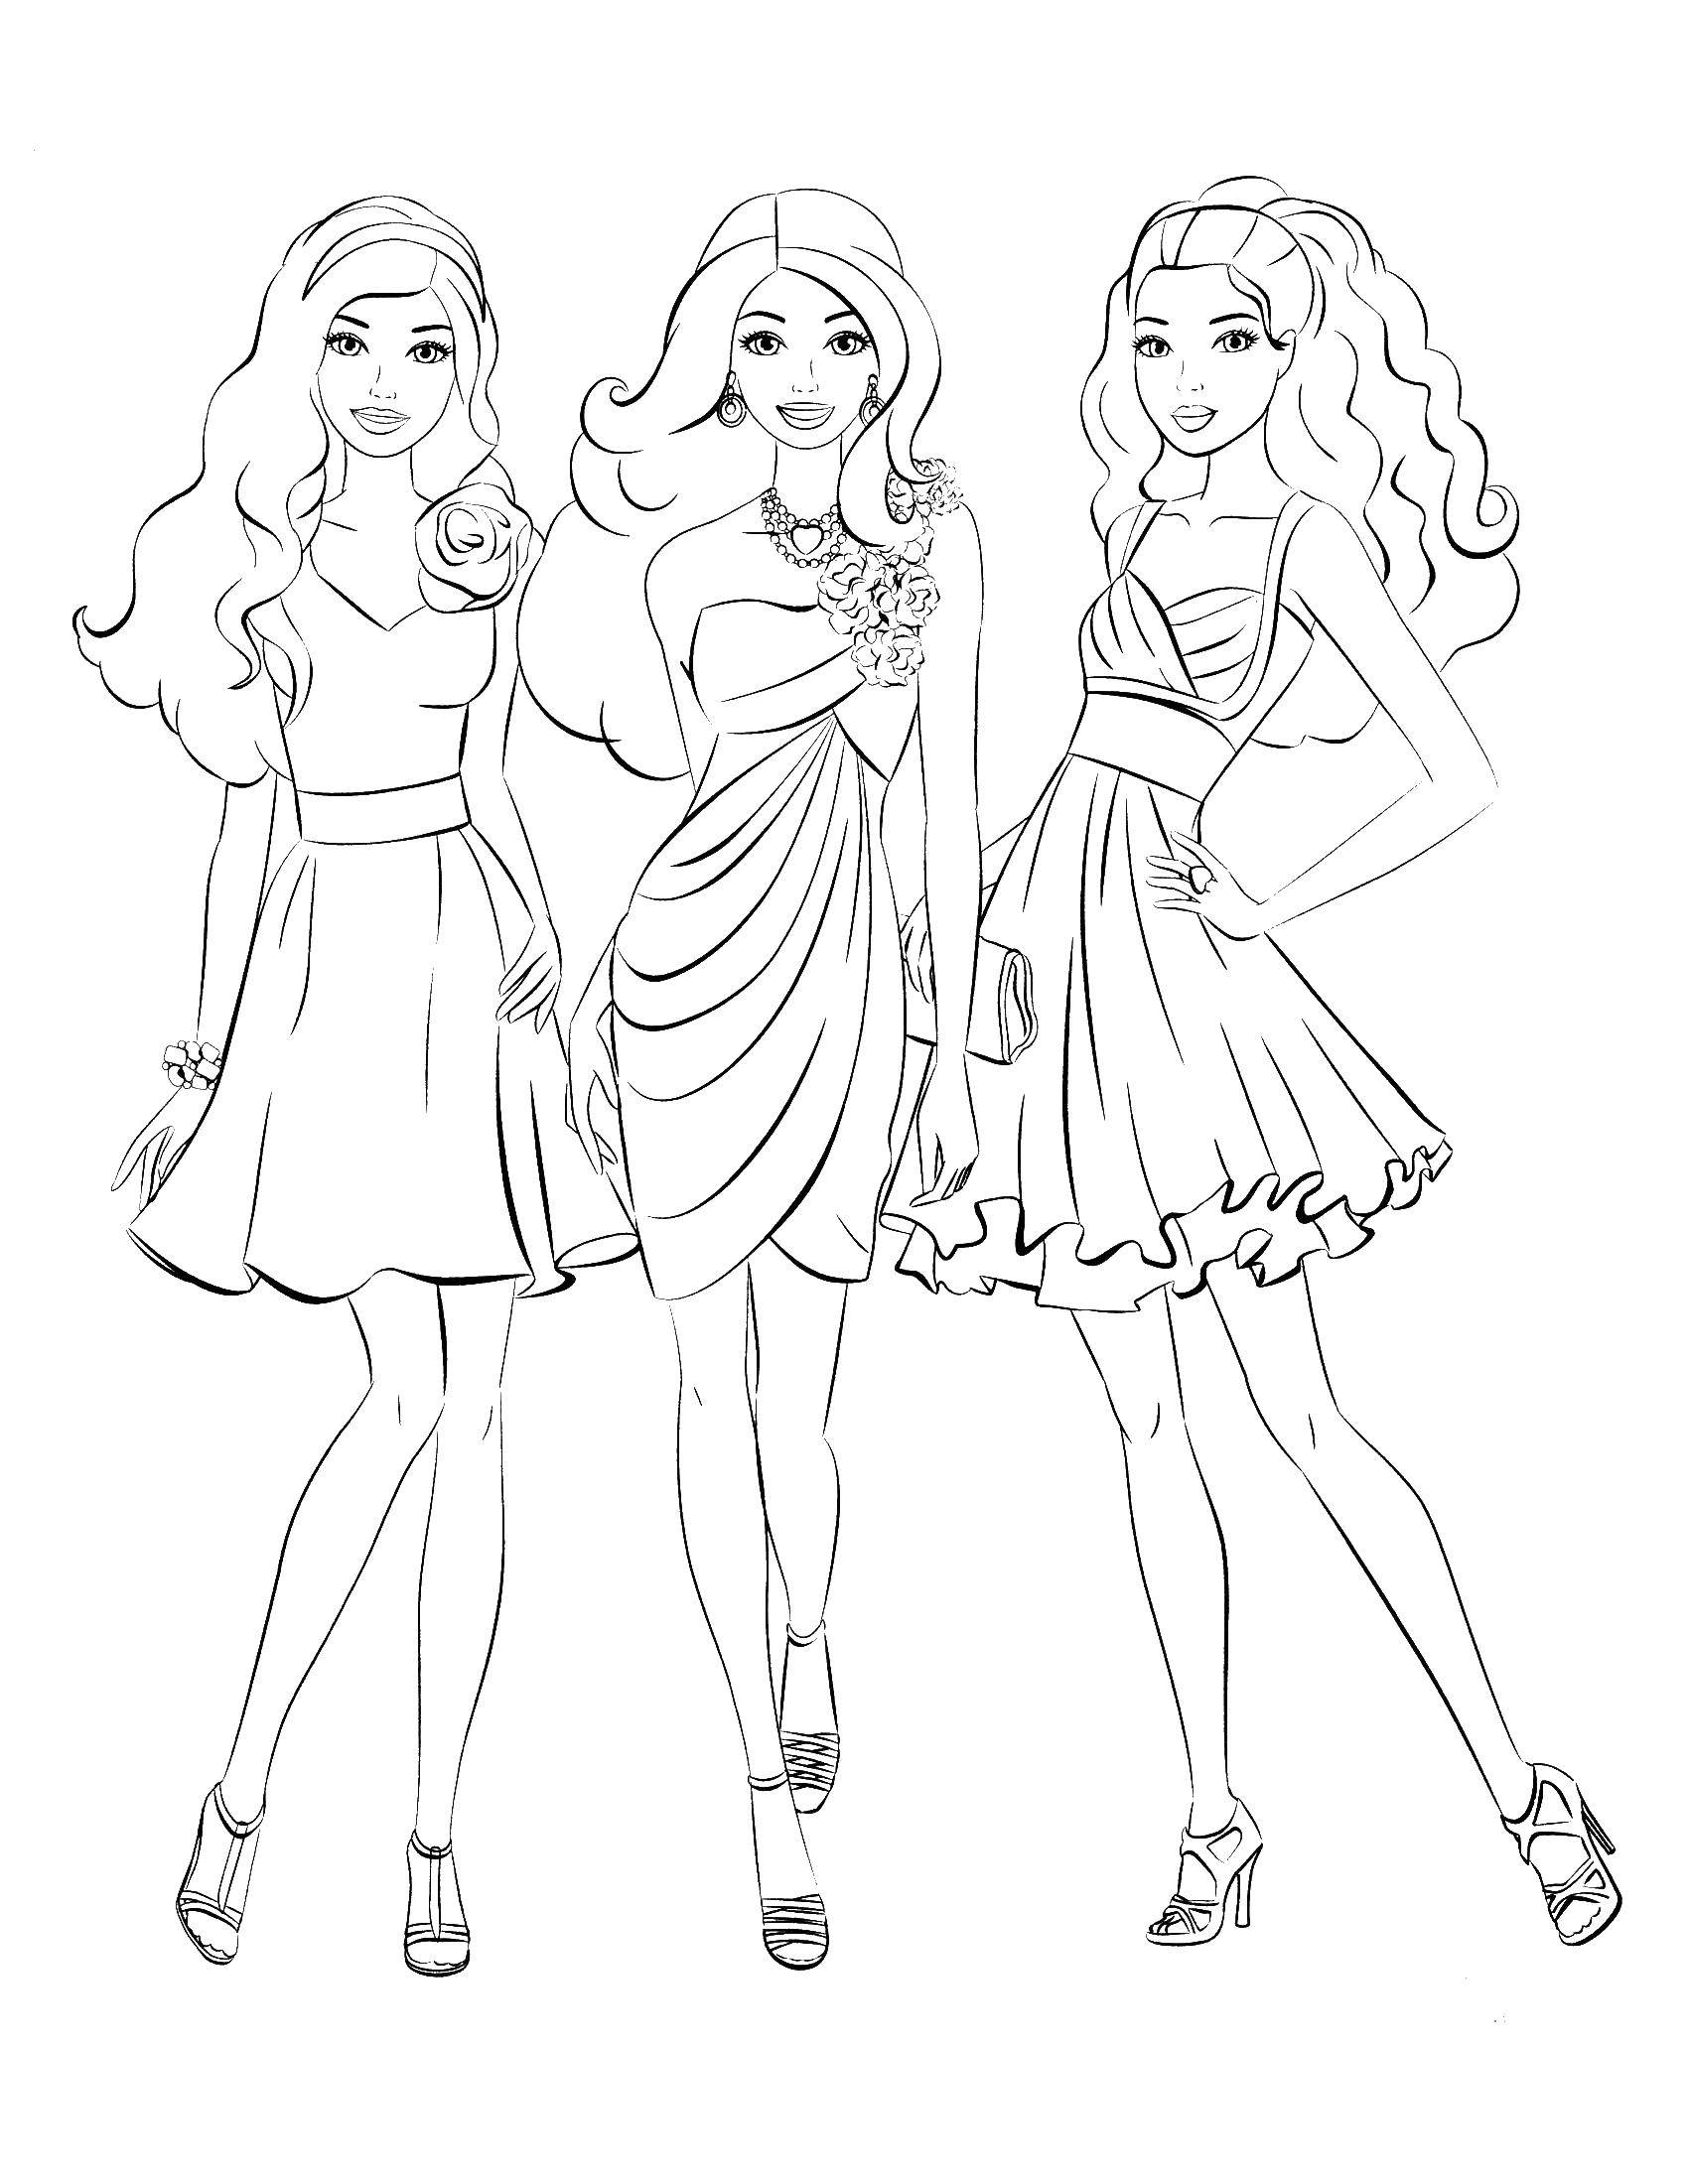 Опис: розмальовки  Три барбі в танцювальних сукнях. Категорія: Барбі. Теги:  барбі, плаття, дівчата.